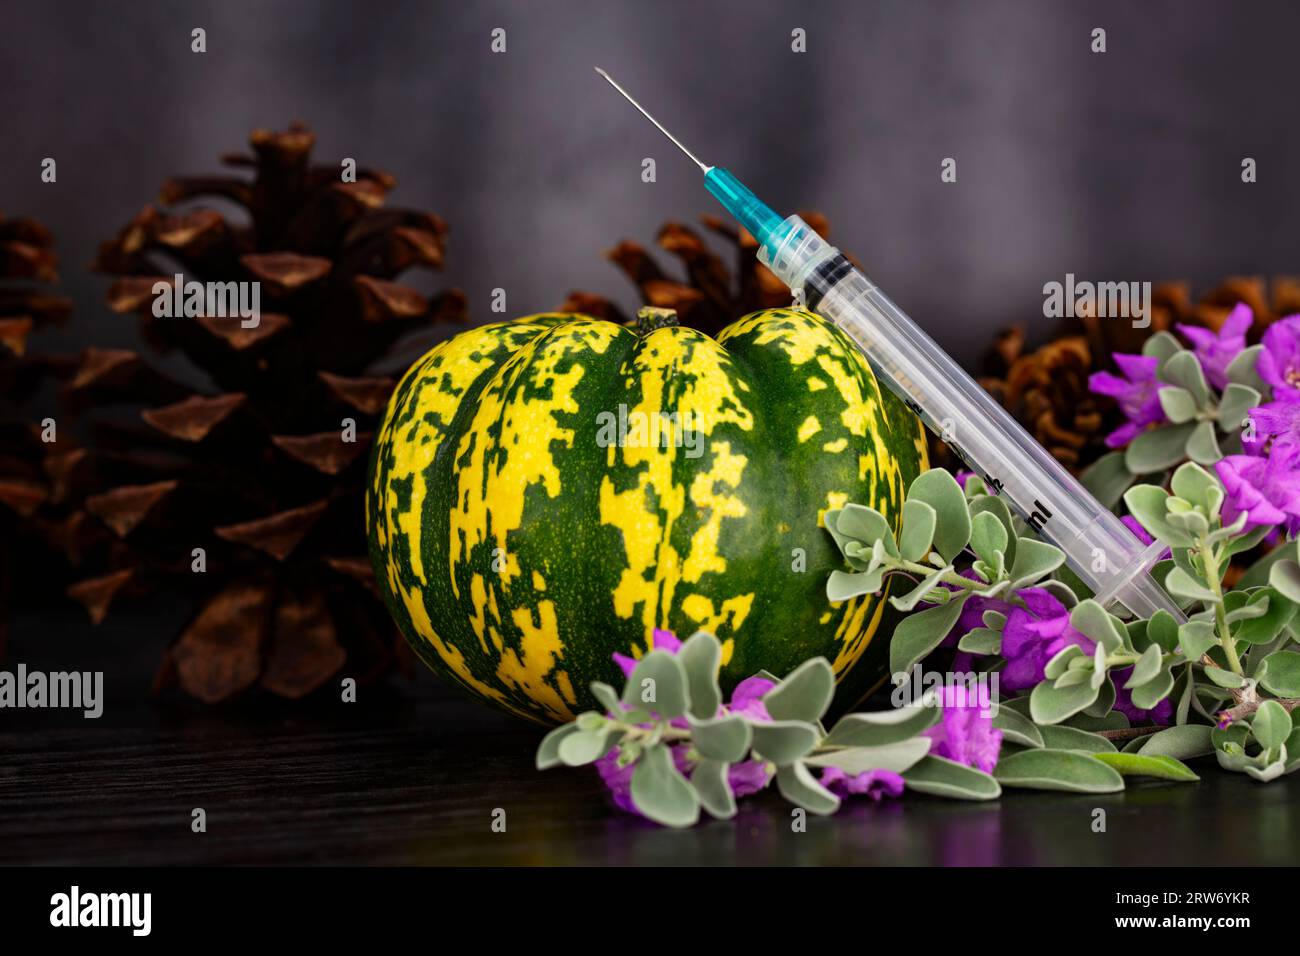 Mise à jour automnale dans les vaccinations et vaccins vus dans la seringue placée avec la courge d'automne, les pommes de pin, et les fleurs violettes Texas Ranger sur fond de bois foncé Banque D'Images